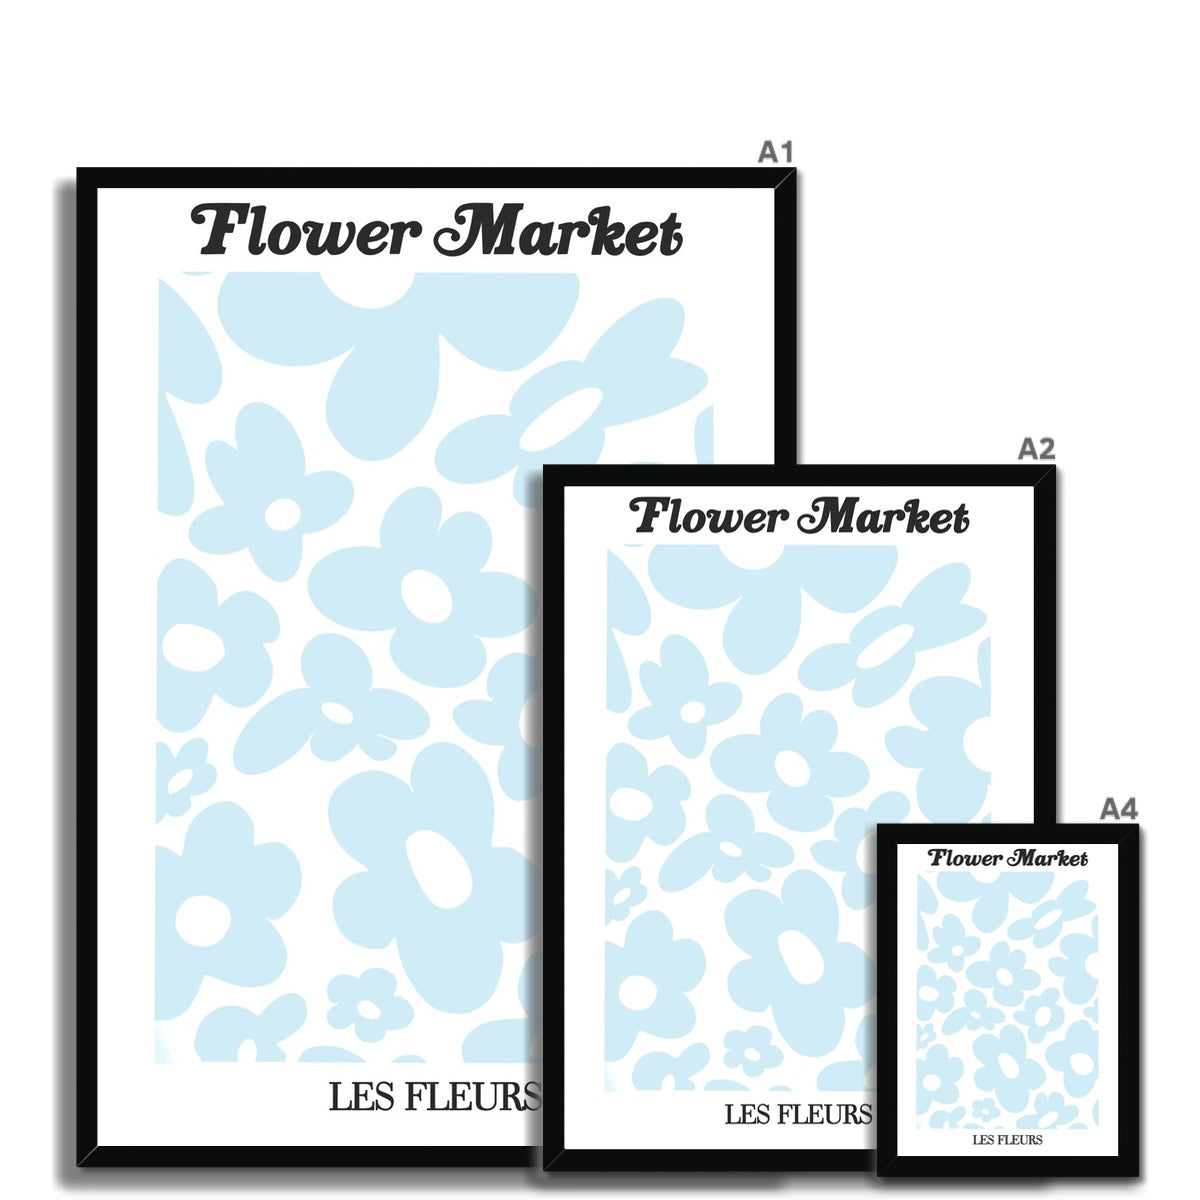 flower market / les fleurs Framed Print